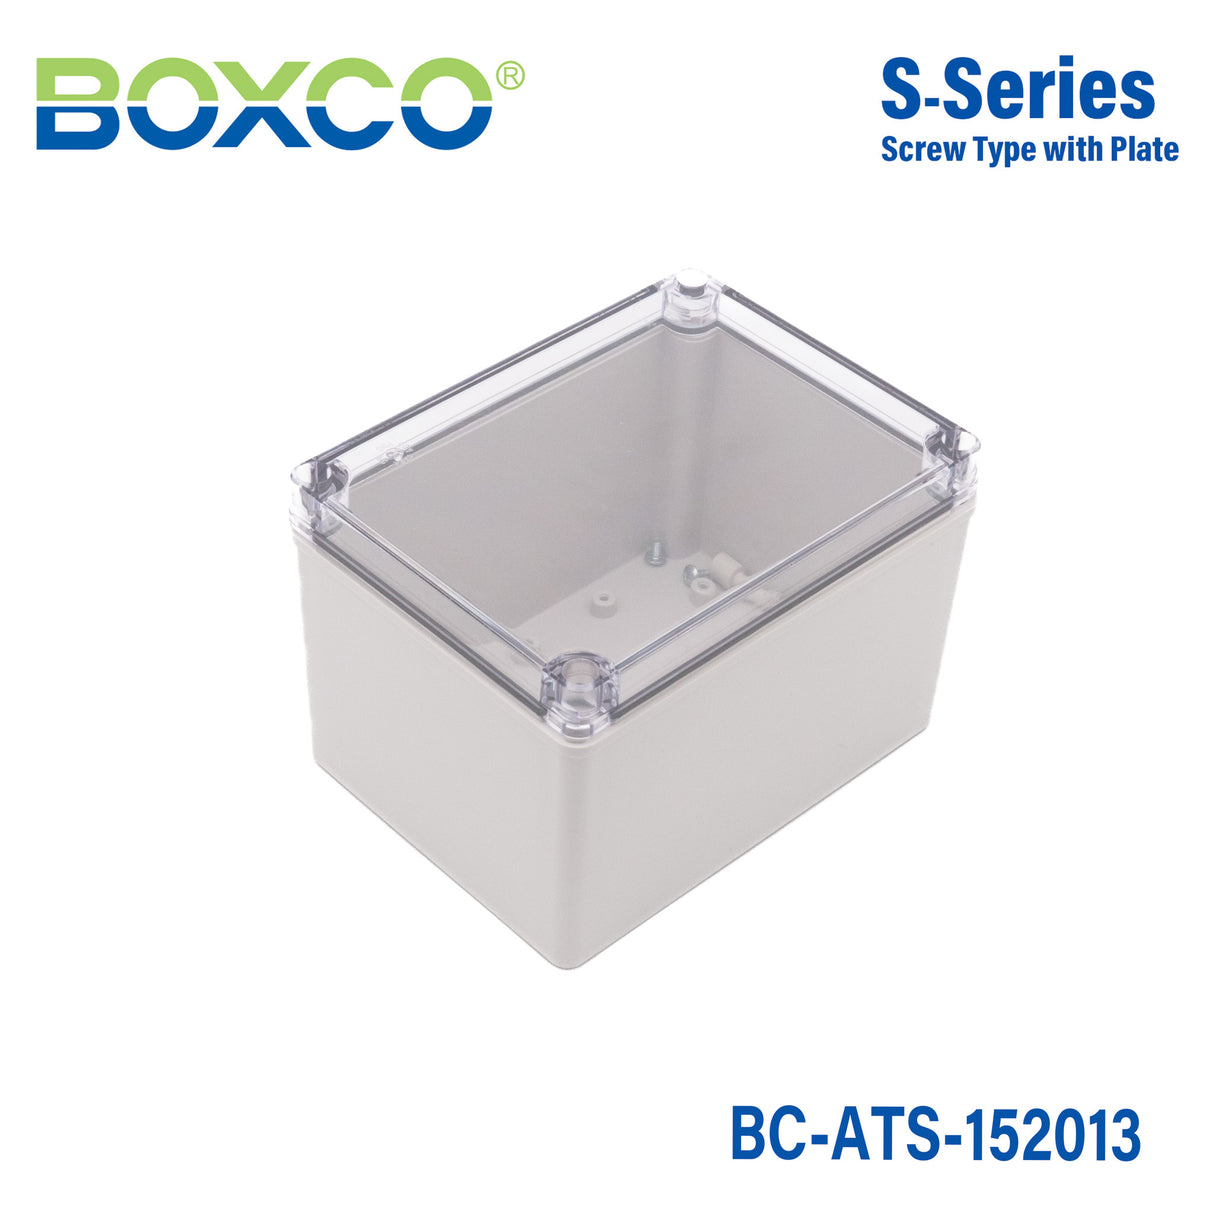 Boxco S-Series 150x200x130mm Plastic Enclosure, IP67, IK08, ABS, Transparent Cover, Screw Type